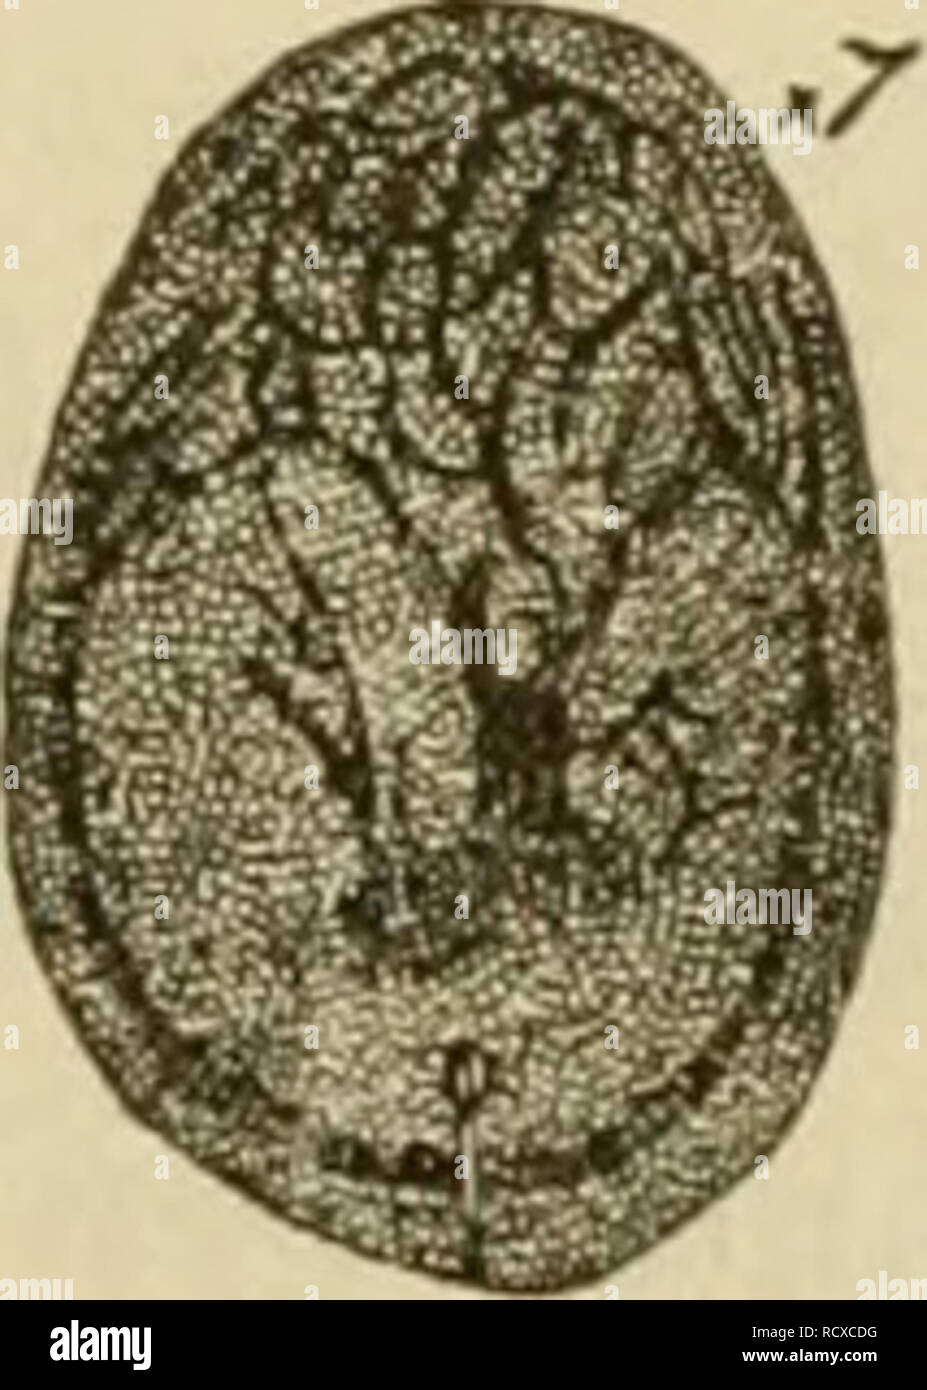 . Ein beschreibender Katalog der Skala Insekten ("coccidae") von Australien. Insekten - Australien; Maßstab Insekten. Abb. 211. Abb. 24.. Bitte beachten Sie, dass diese Bilder sind von der gescannten Seite Bilder, die digital für die Lesbarkeit verbessert haben mögen - Färbung und Aussehen dieser Abbildungen können nicht perfekt dem Original ähneln. extrahiert. Froggatt, Walter Wilson, 1858 -. Sydney: W. A. Gullick, Regierung, Drucker Stockfoto